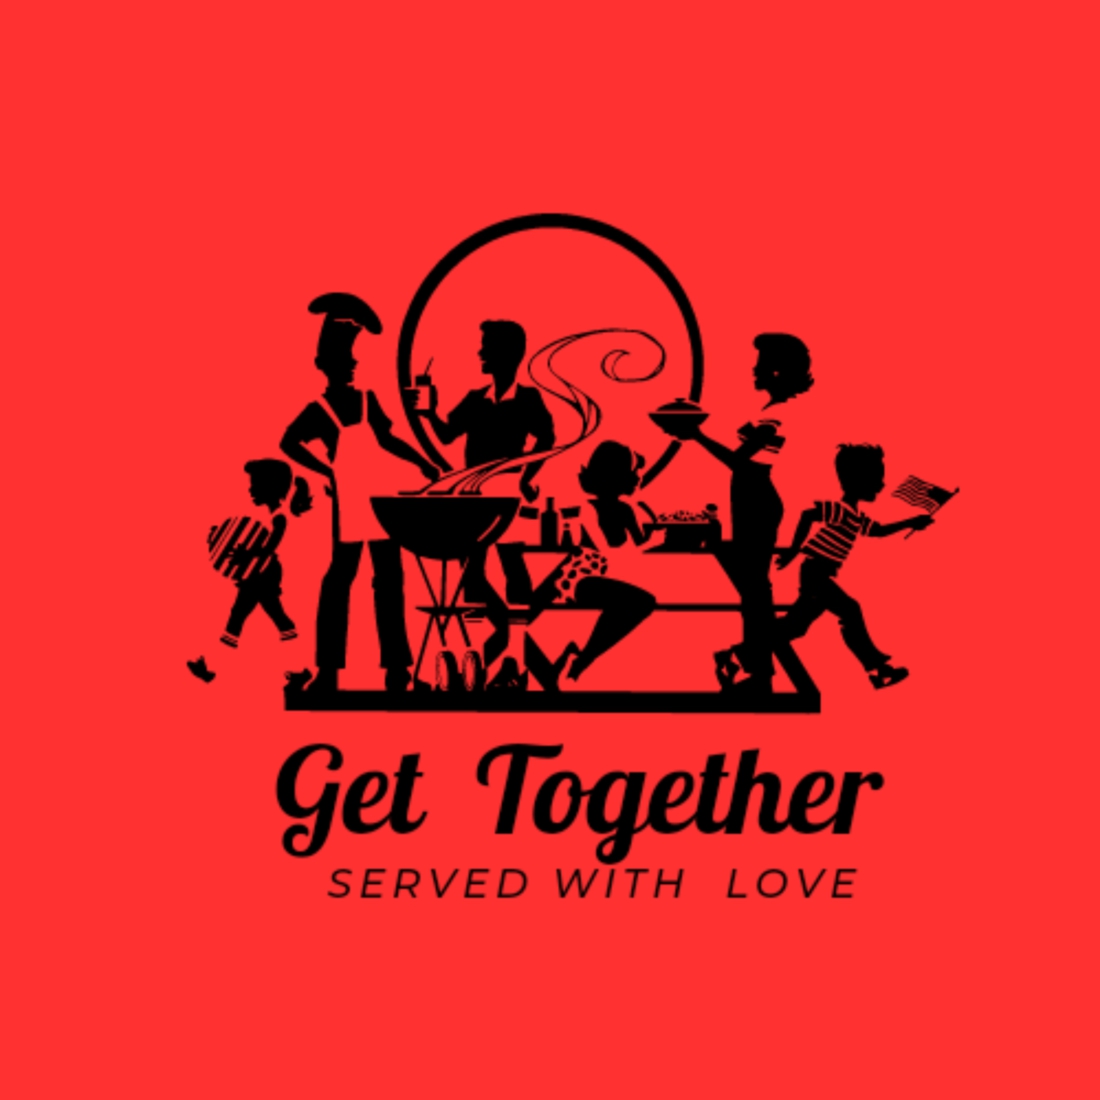 Get Together Diner Logo preview image.